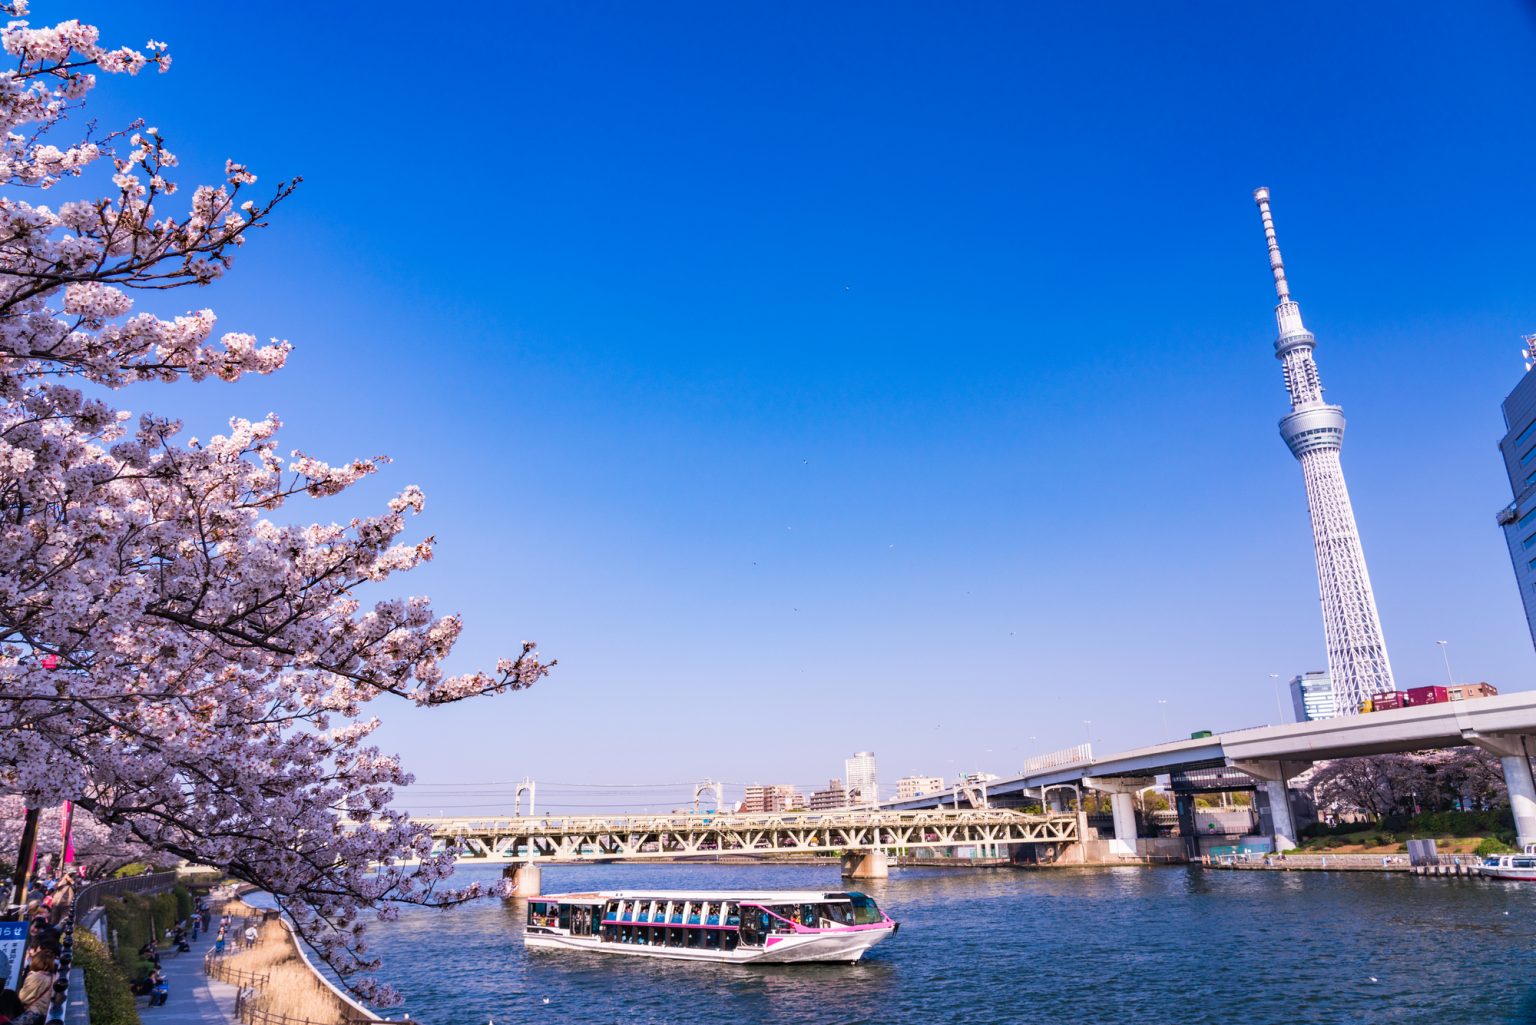 屋形船が通る隅田川の河川